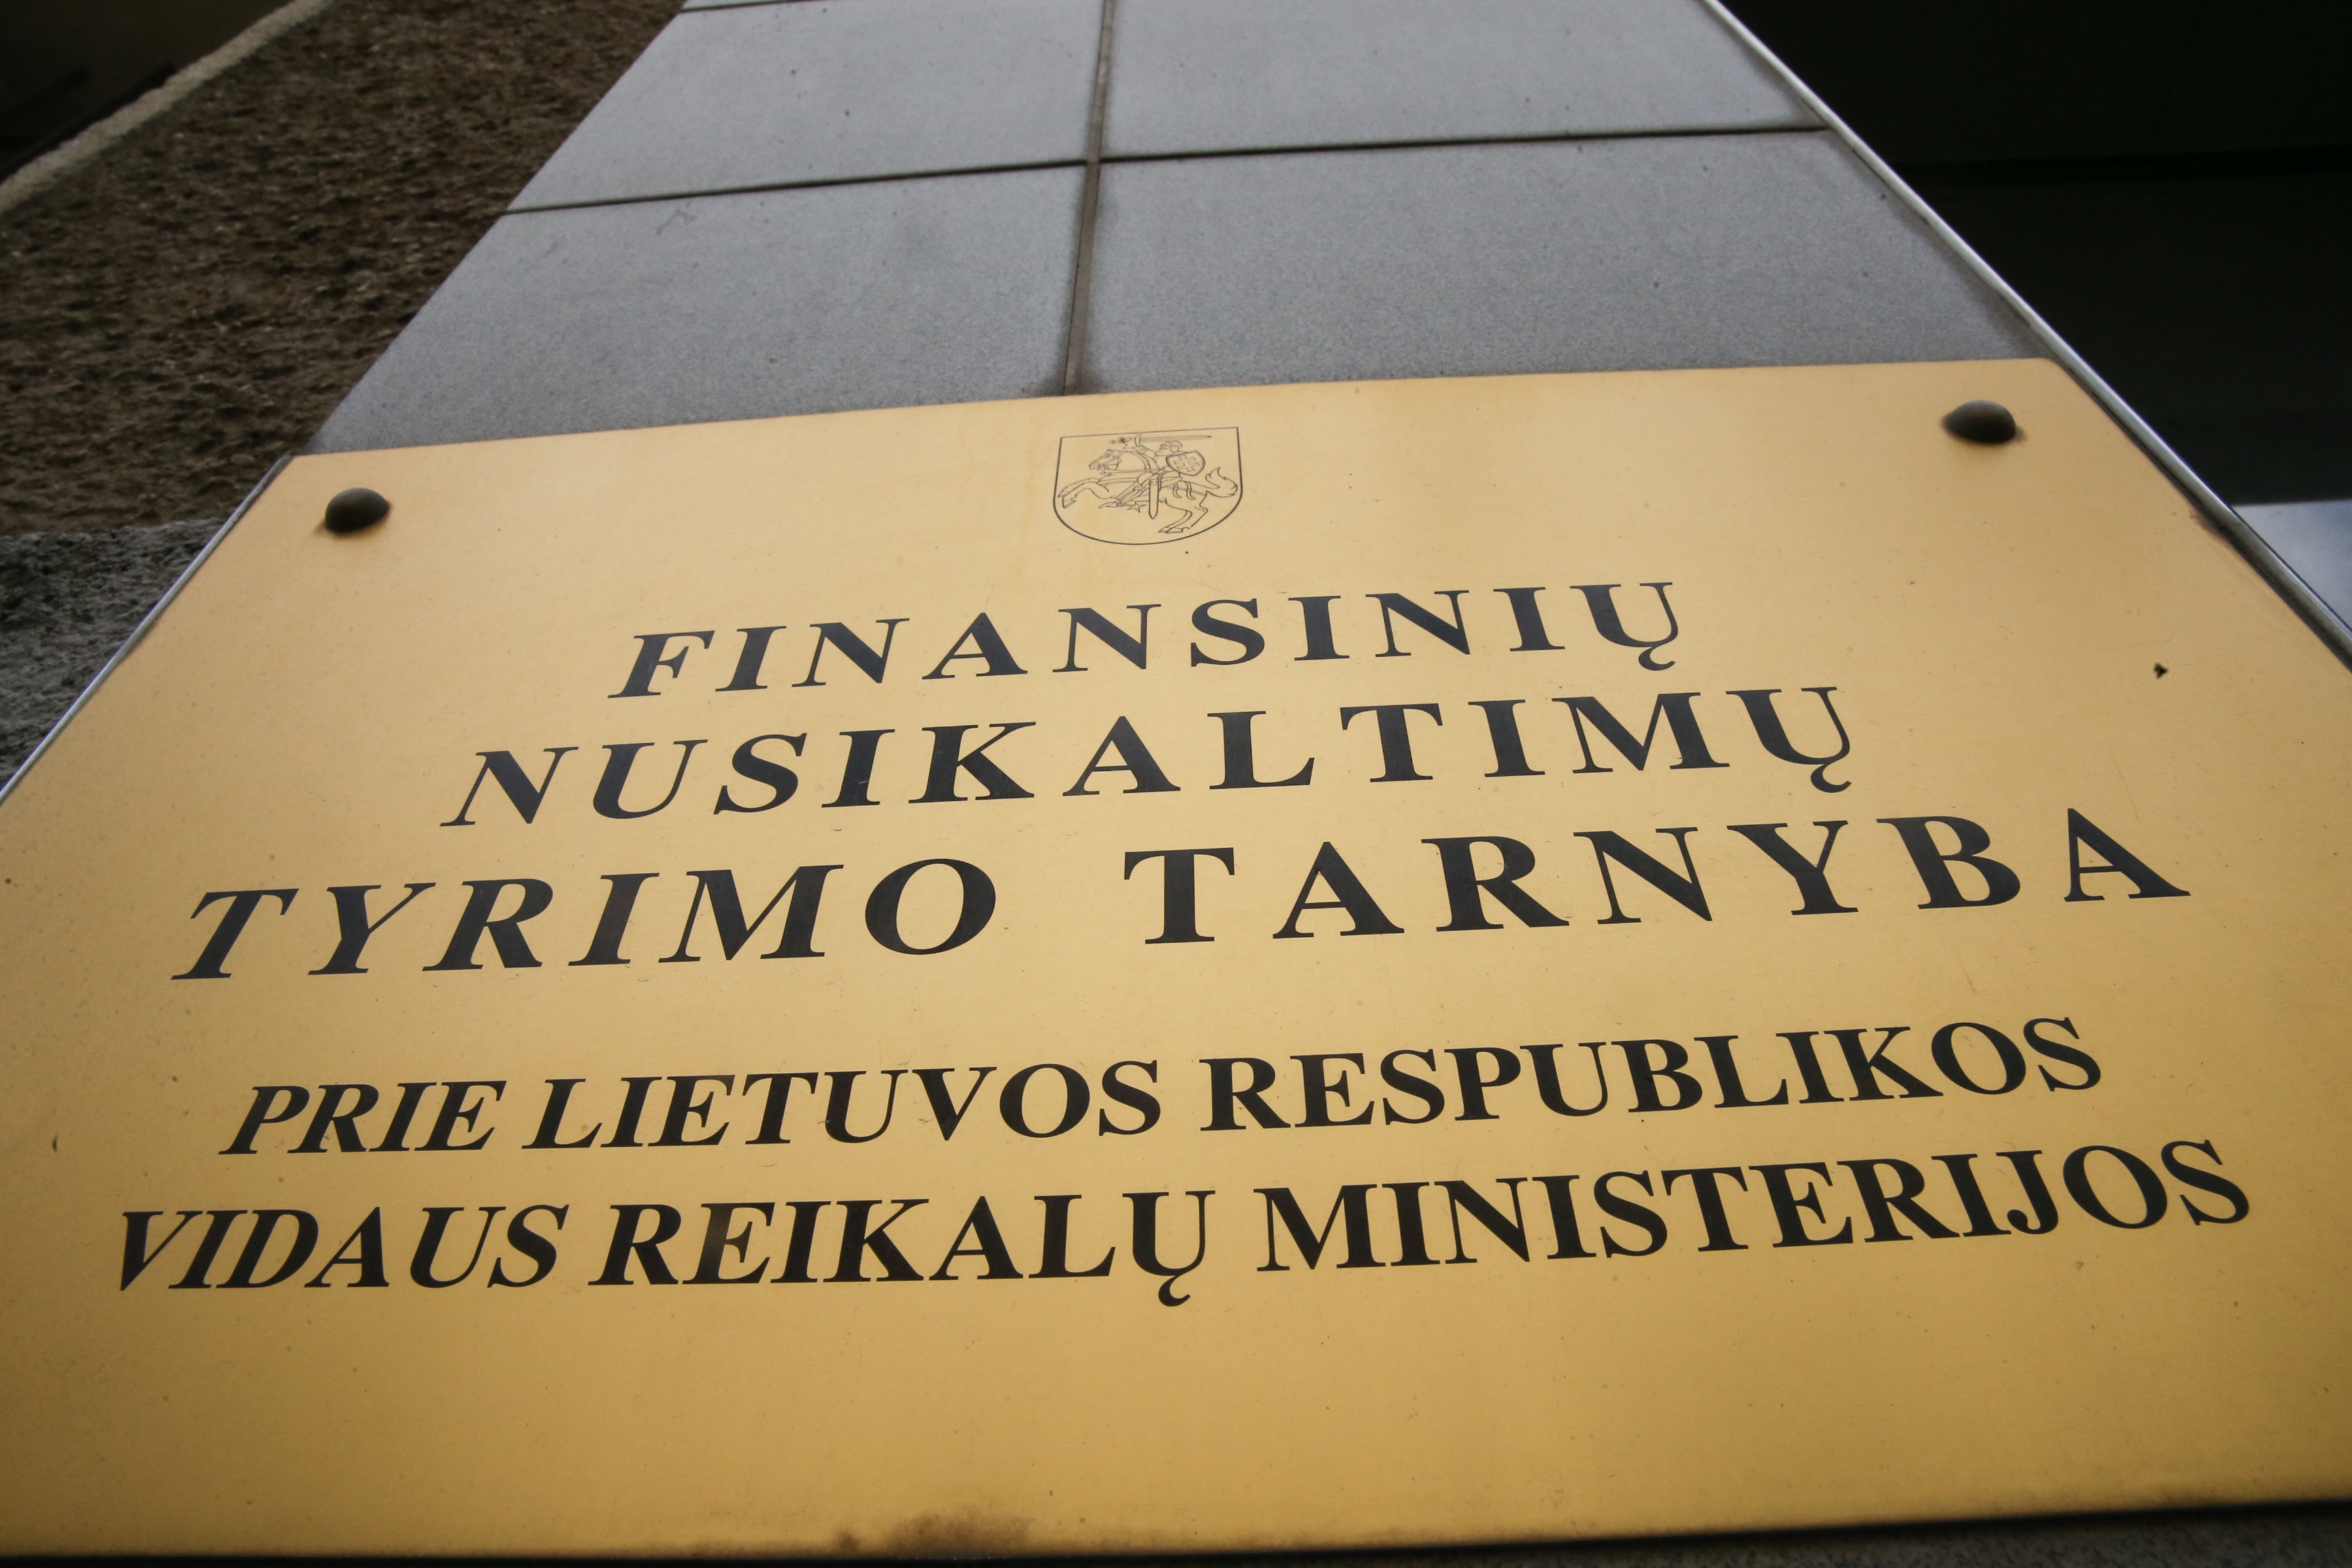 Finansinių nusikaltimų tyrimo tarnybos (FNTT) – Vidaus reikalų ministerijai (VRM) atskaitinga valstybės teisėsaugos įstaiga.R.Danisevičiaus nuotr.